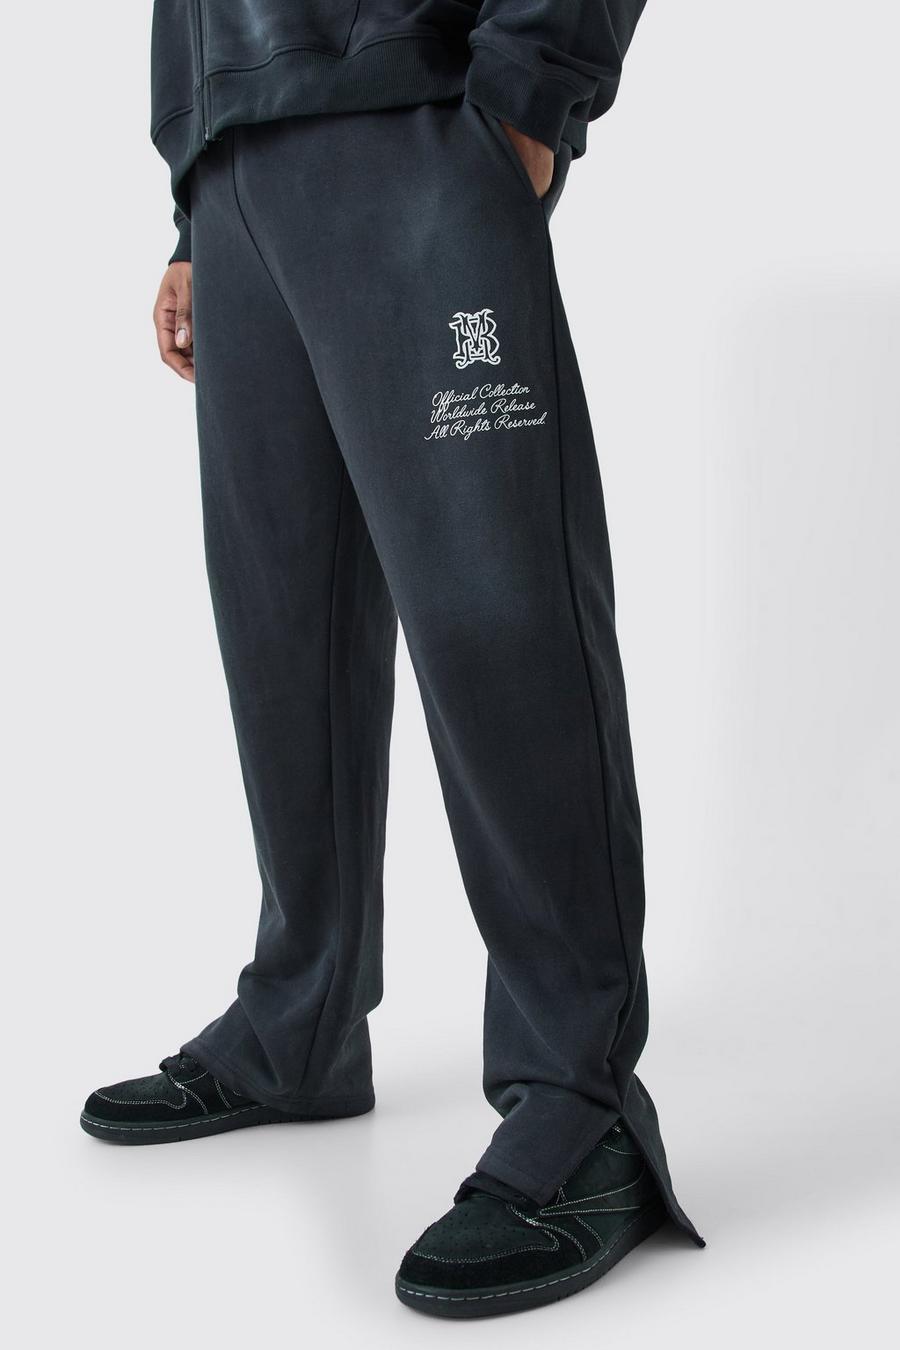 Pantalón deportivo Plus de tela rizo con abertura lateral y lavado a la piedra, Black